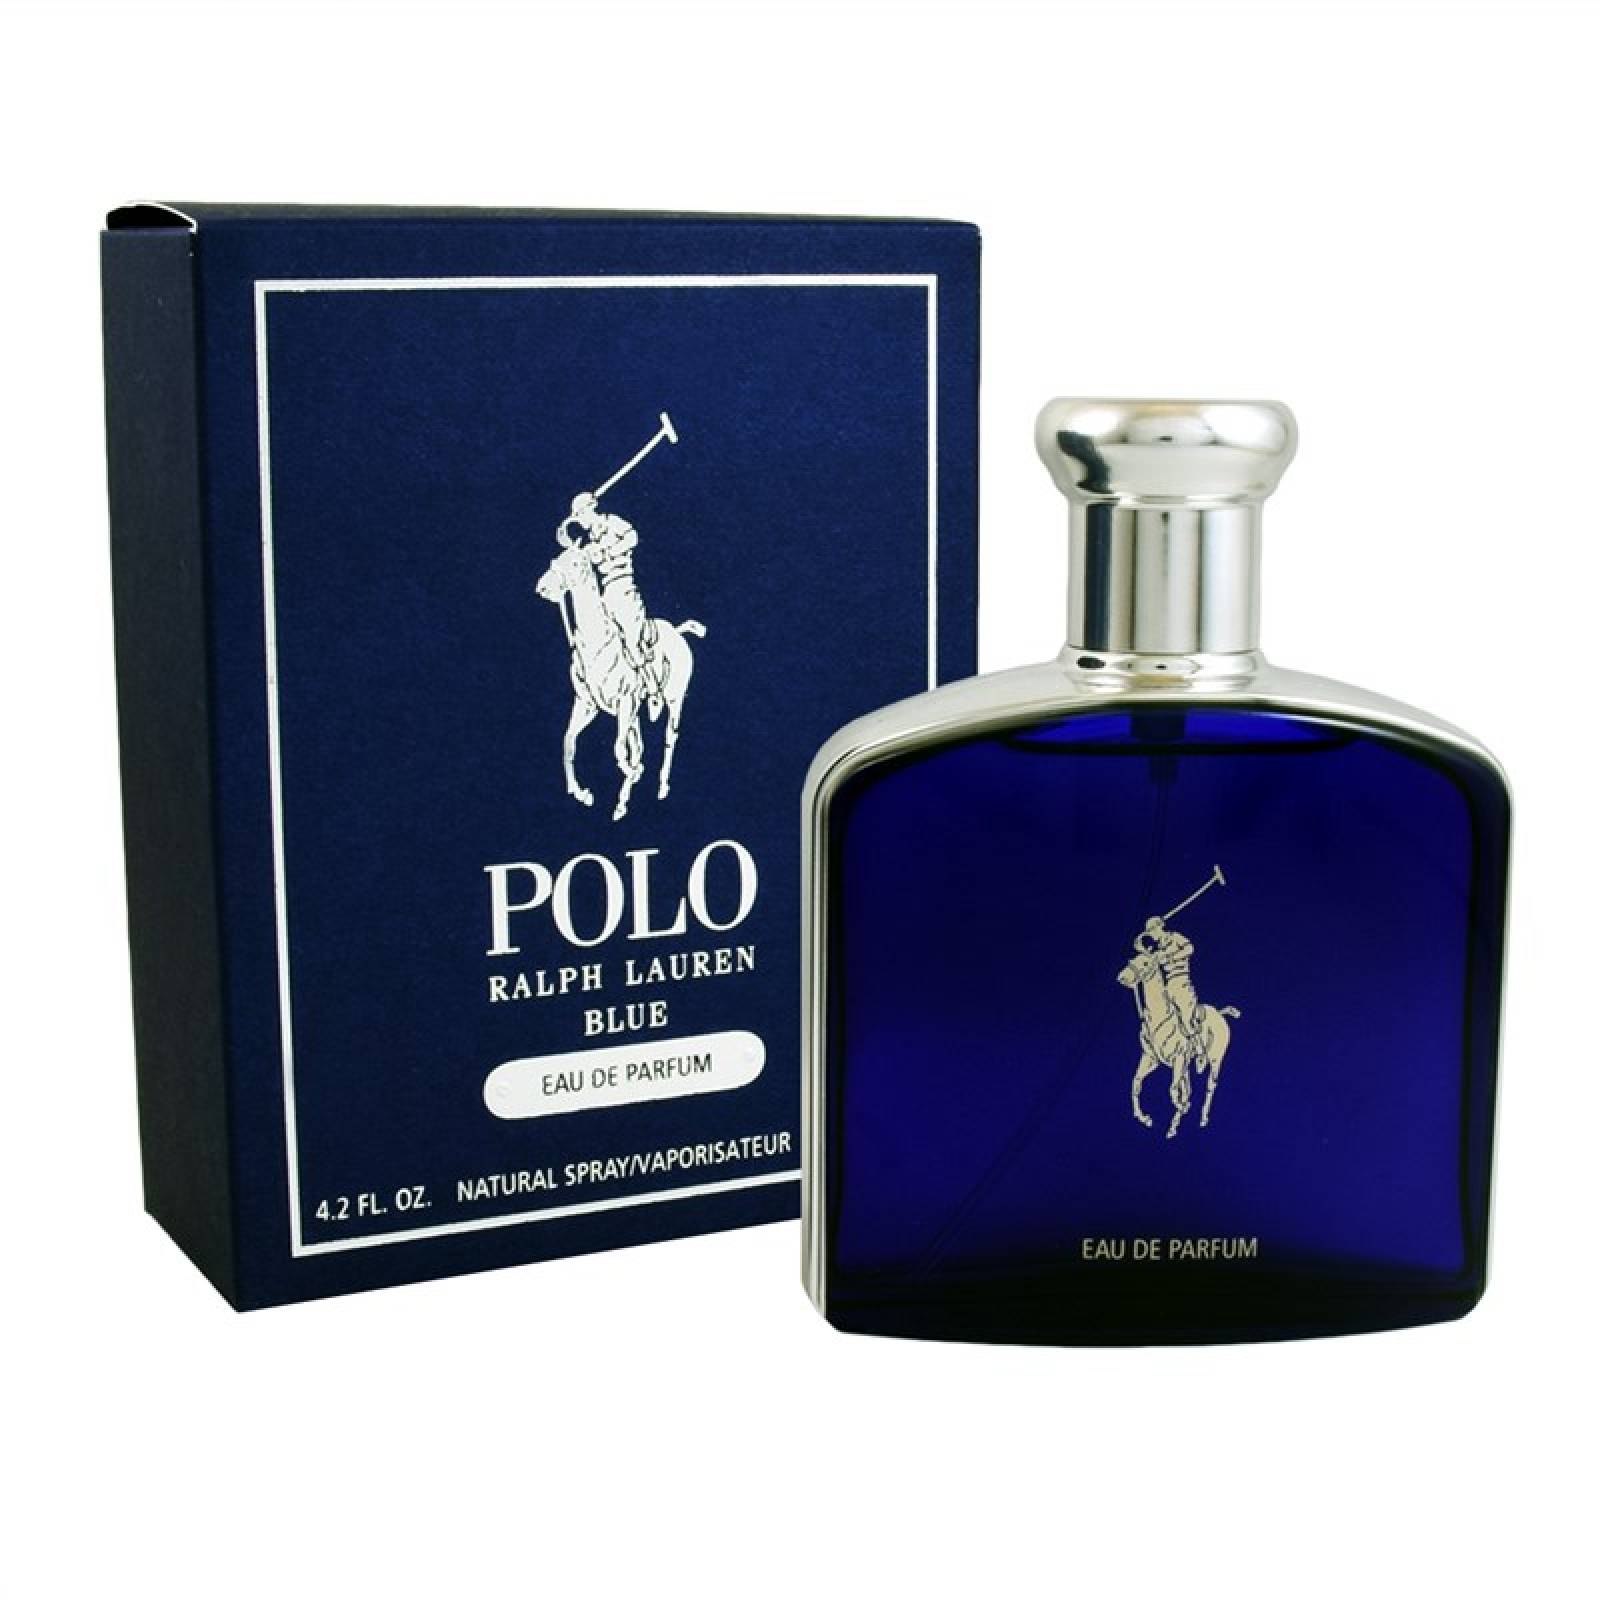 polo ralph lauren blue eau de parfum